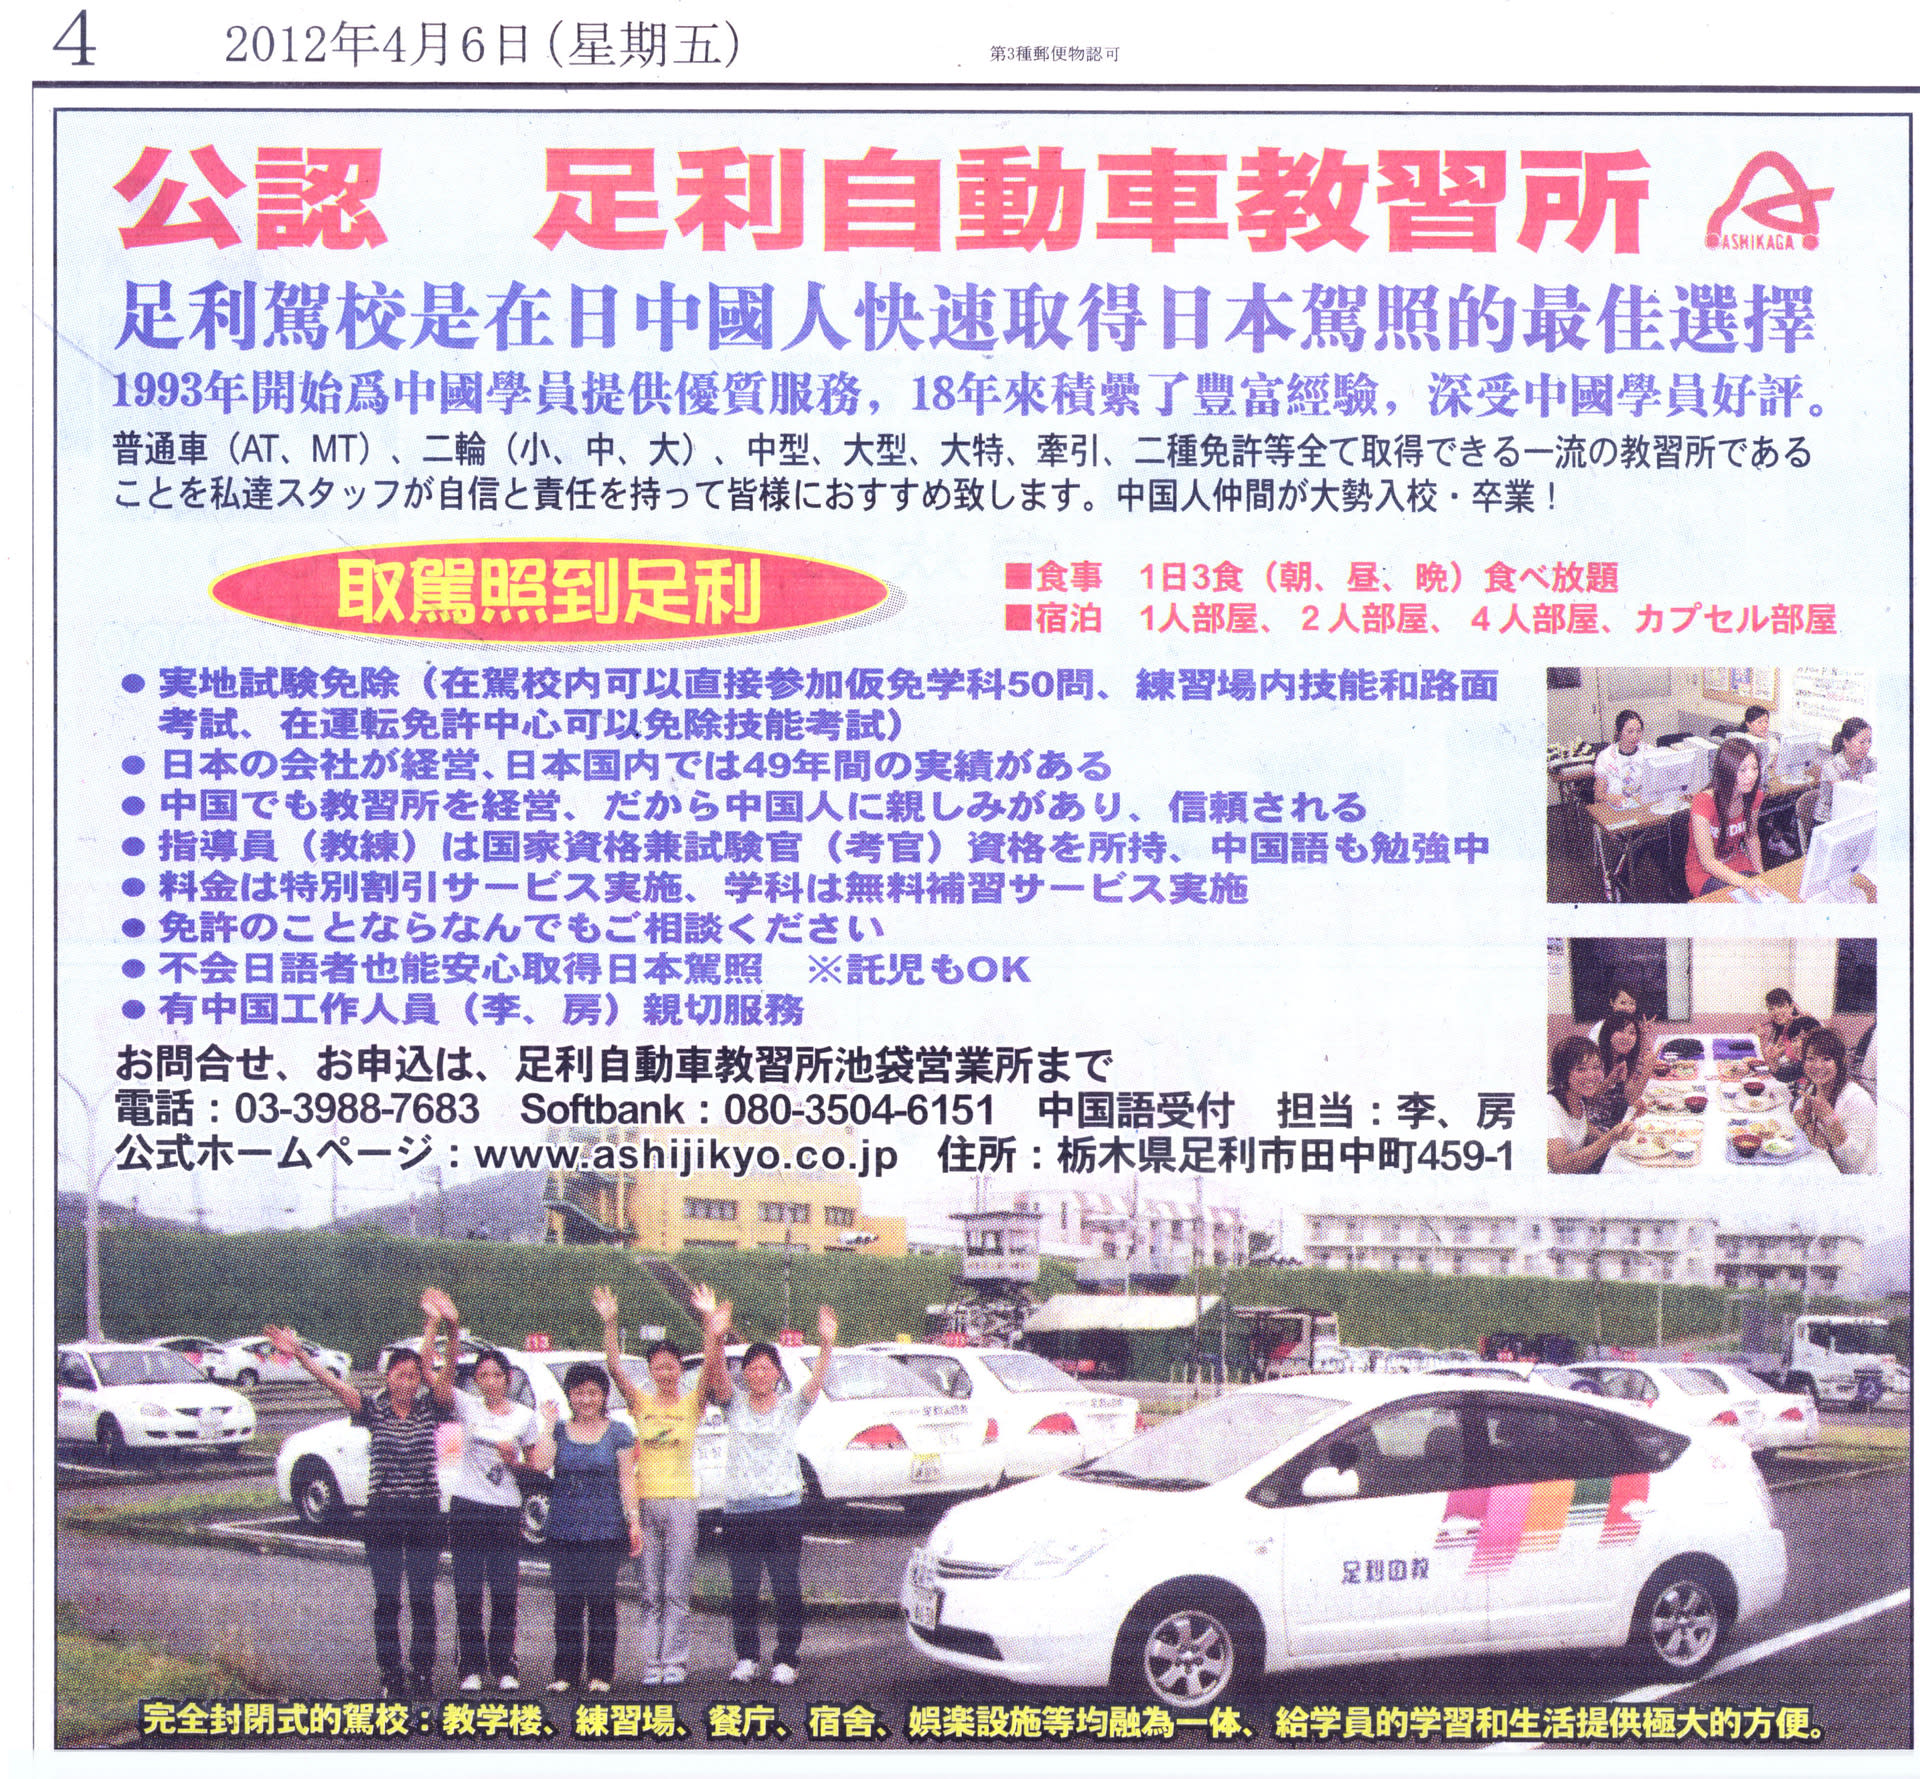 中国の狙いは何か 中国人の足利自動車学校で免許カンニング なぜ中国人が足利の教習所で学ぶのか これはだめだ